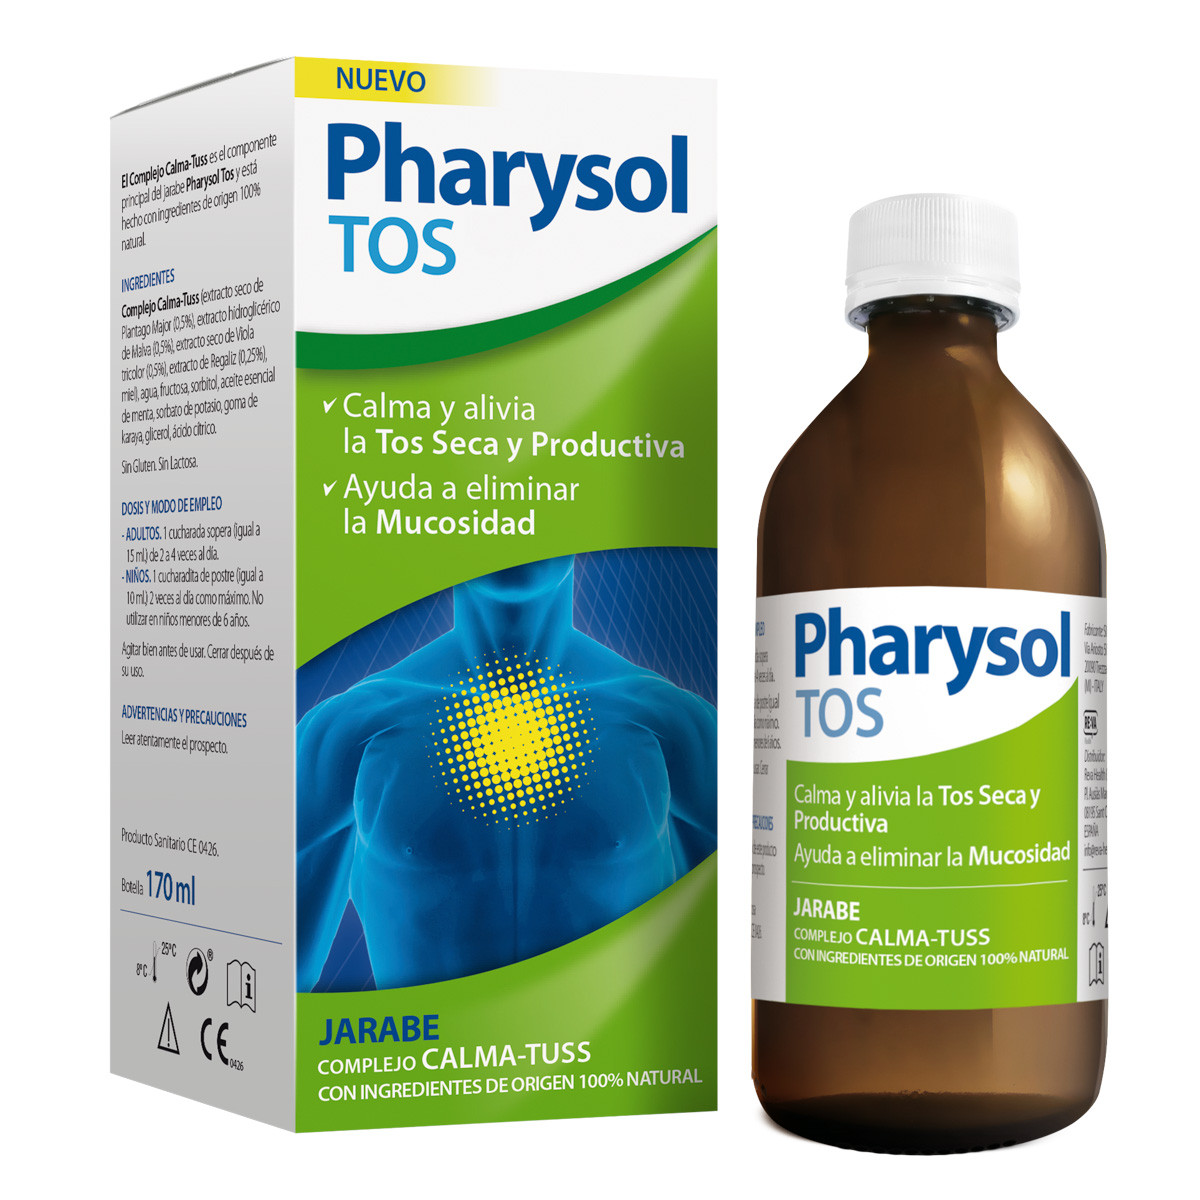 Pharysol tos 170ml